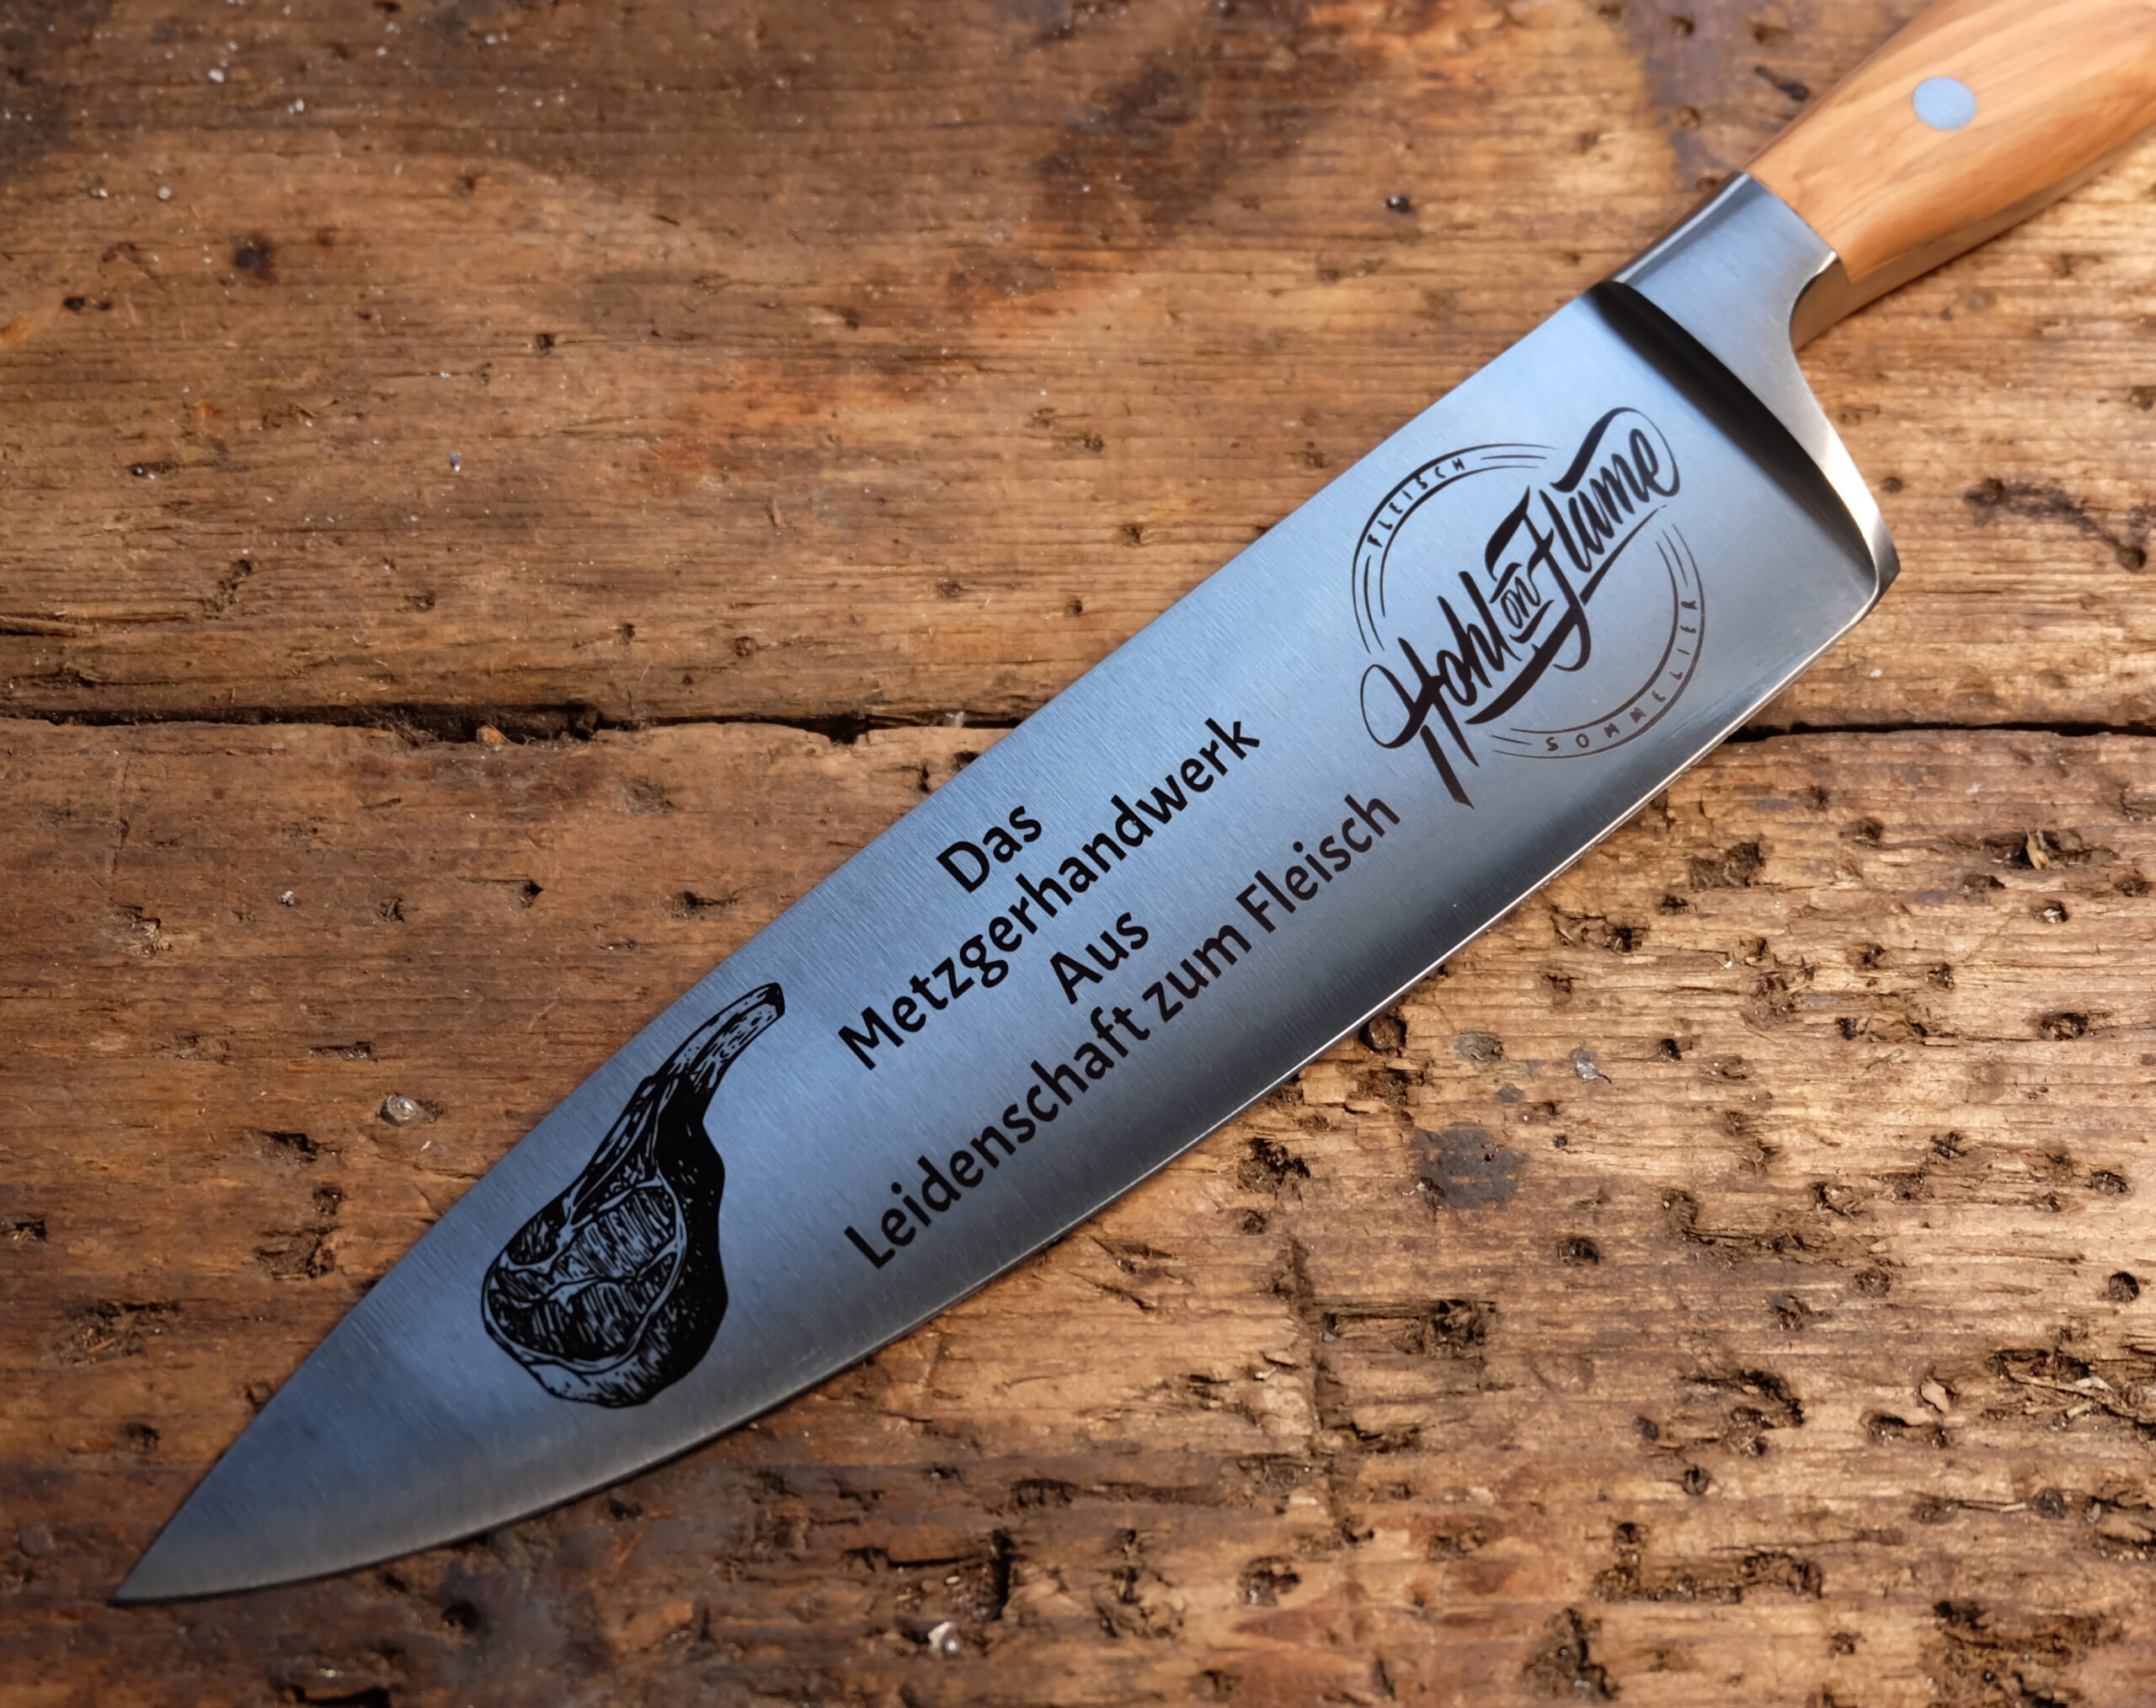 The knife design for Dominik Hohl | 3D Gravur Konfigurator | 1